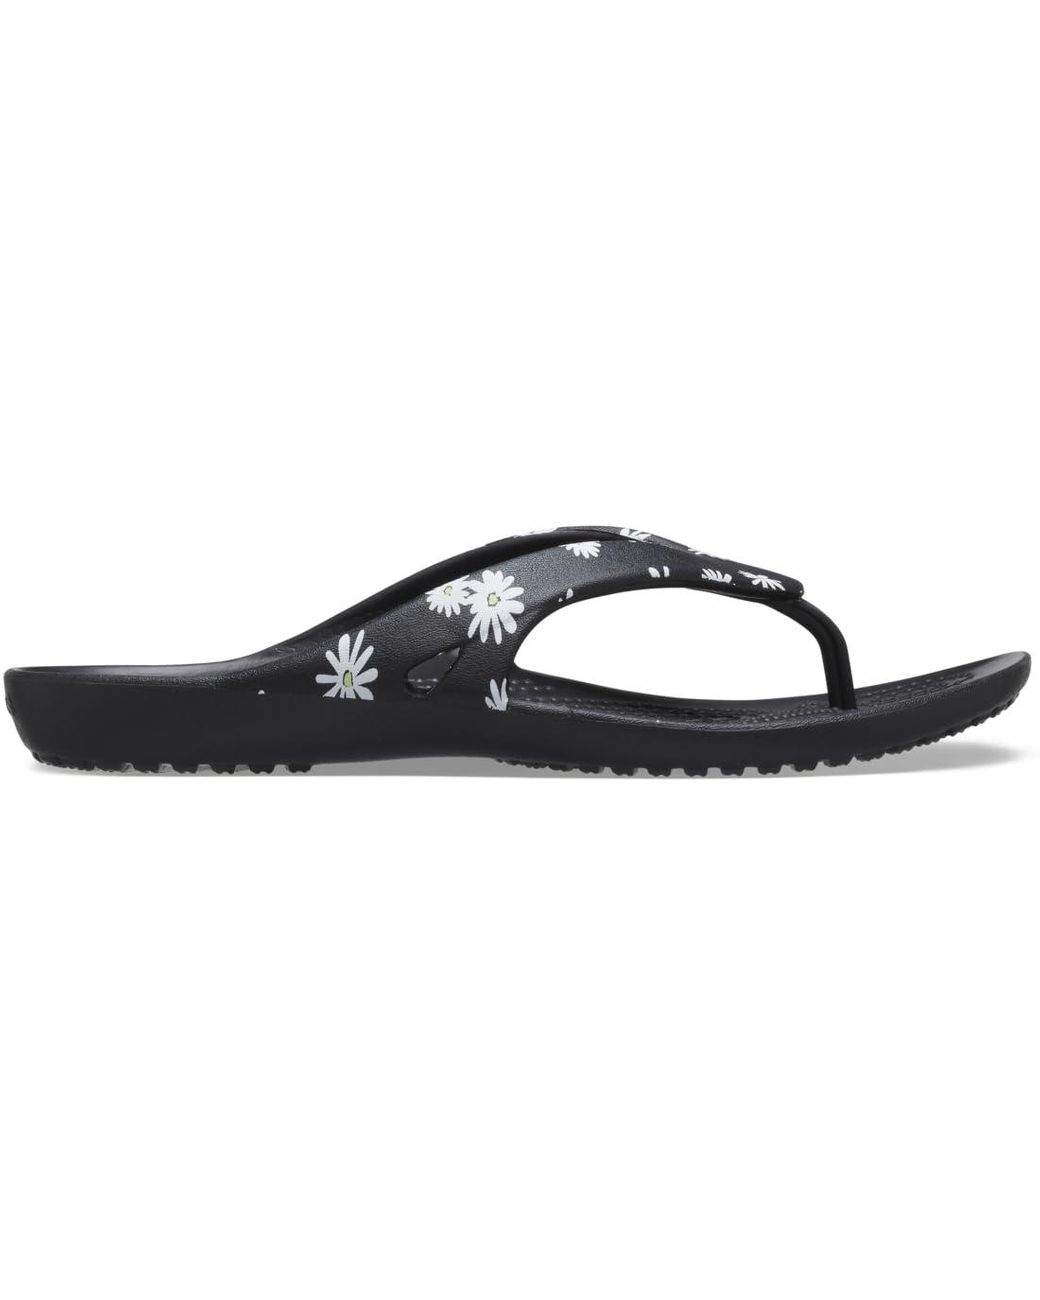 Crocs™ Kadee Ii Graphic Flip Flops | Sandals For in Black | Lyst